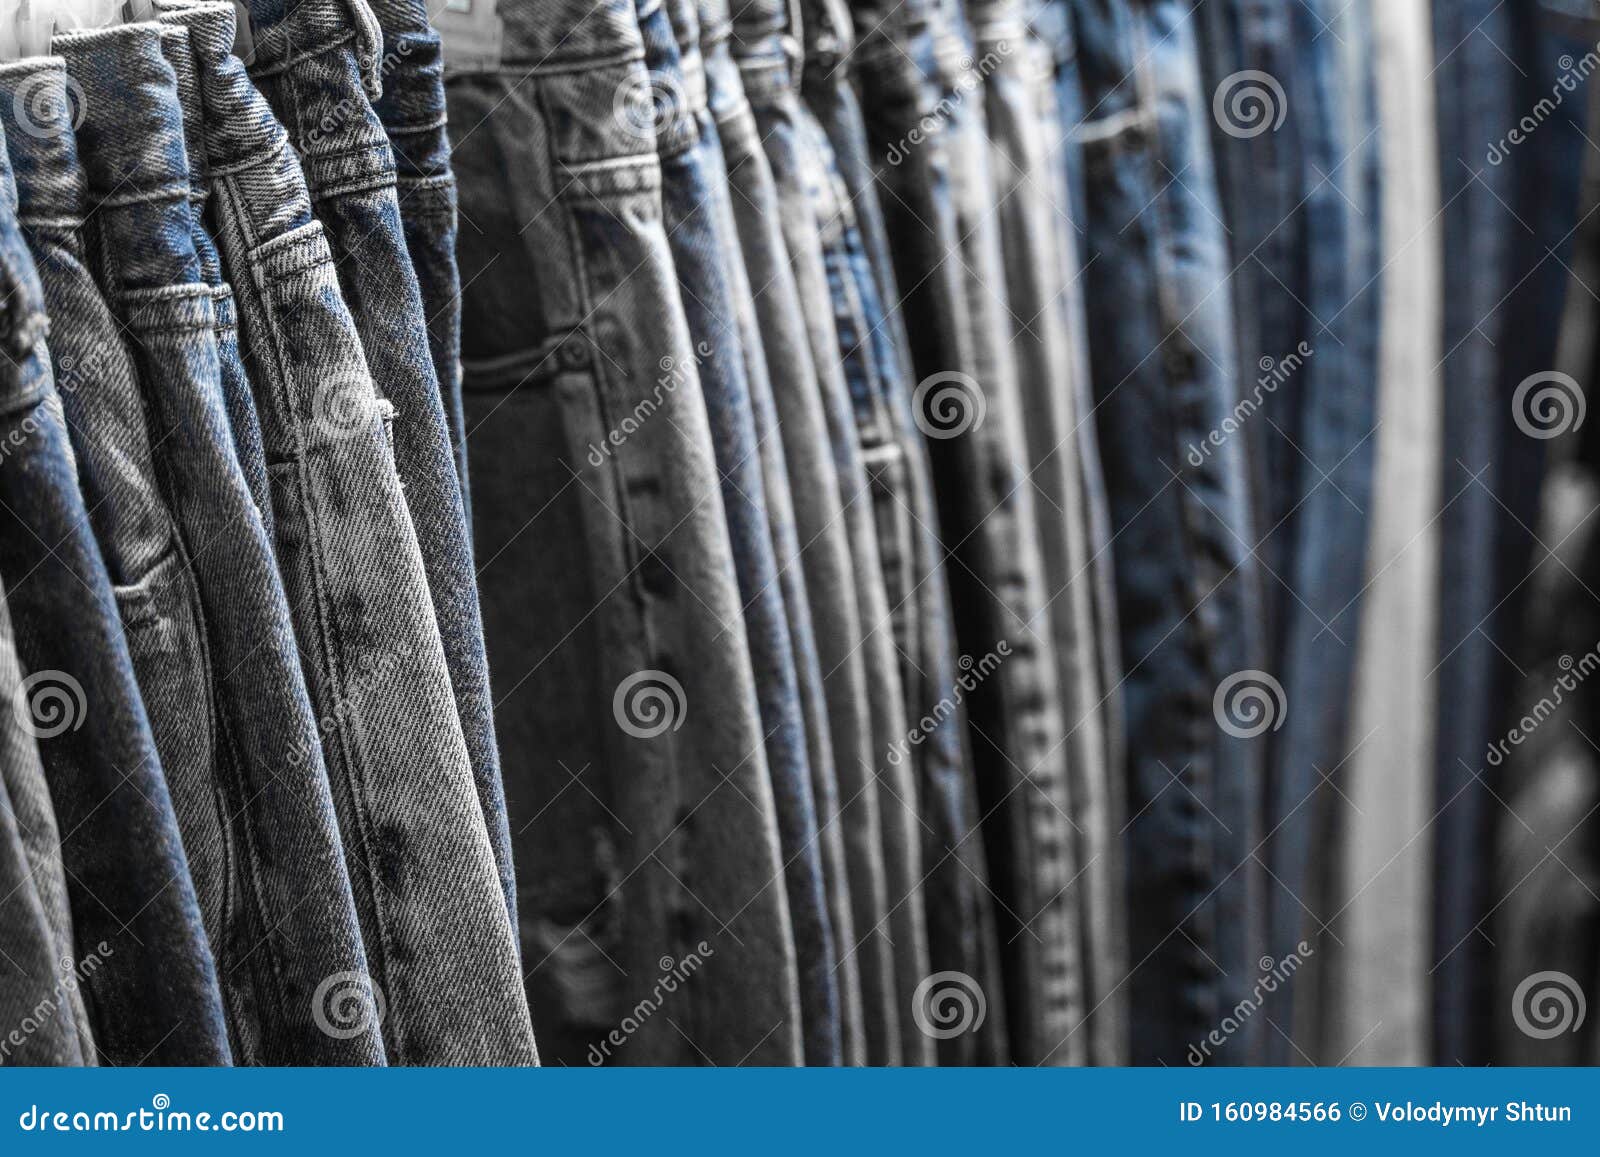 Tienda de ropa tienda jeans pantalones fotografías e imágenes de